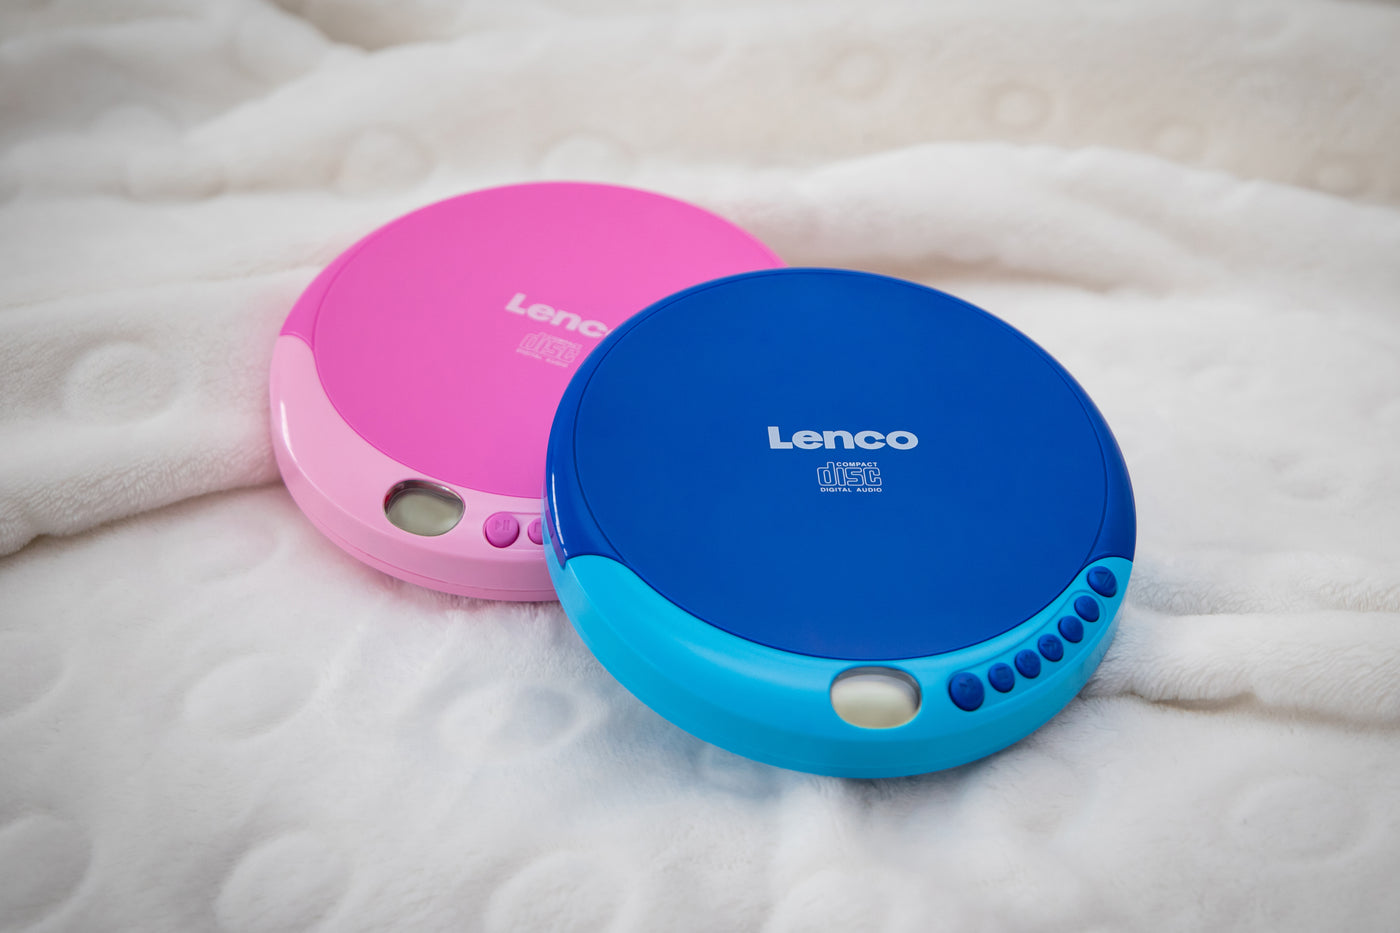 LENCO Blue – Lenco-Catalog CD-011BU - player CD - Portable